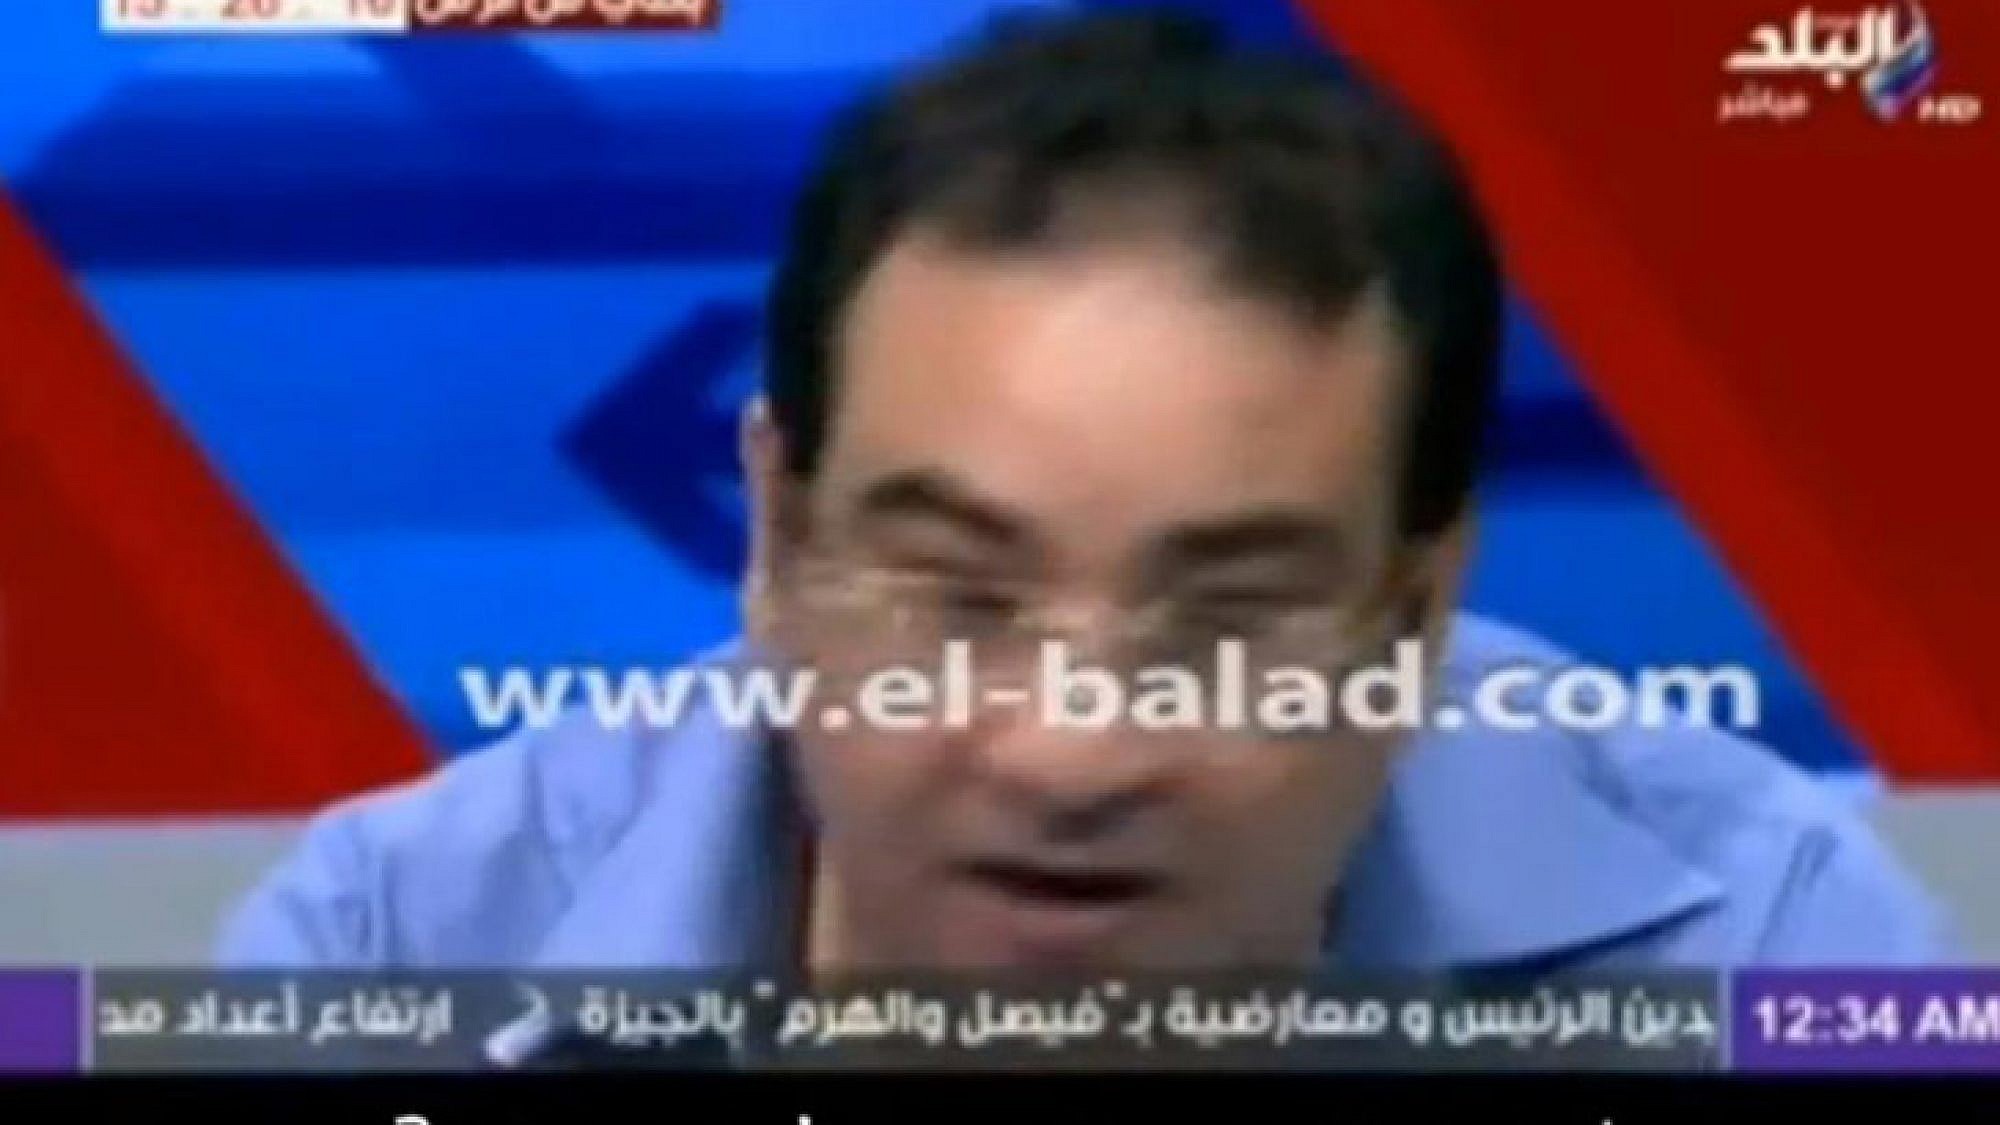 למצרי בסרטון שלפניכם נמאס מכל עניין החתונות שגורם לו לאבד את זה לגמר | צלם: צילום מסך מתוך הסרטון